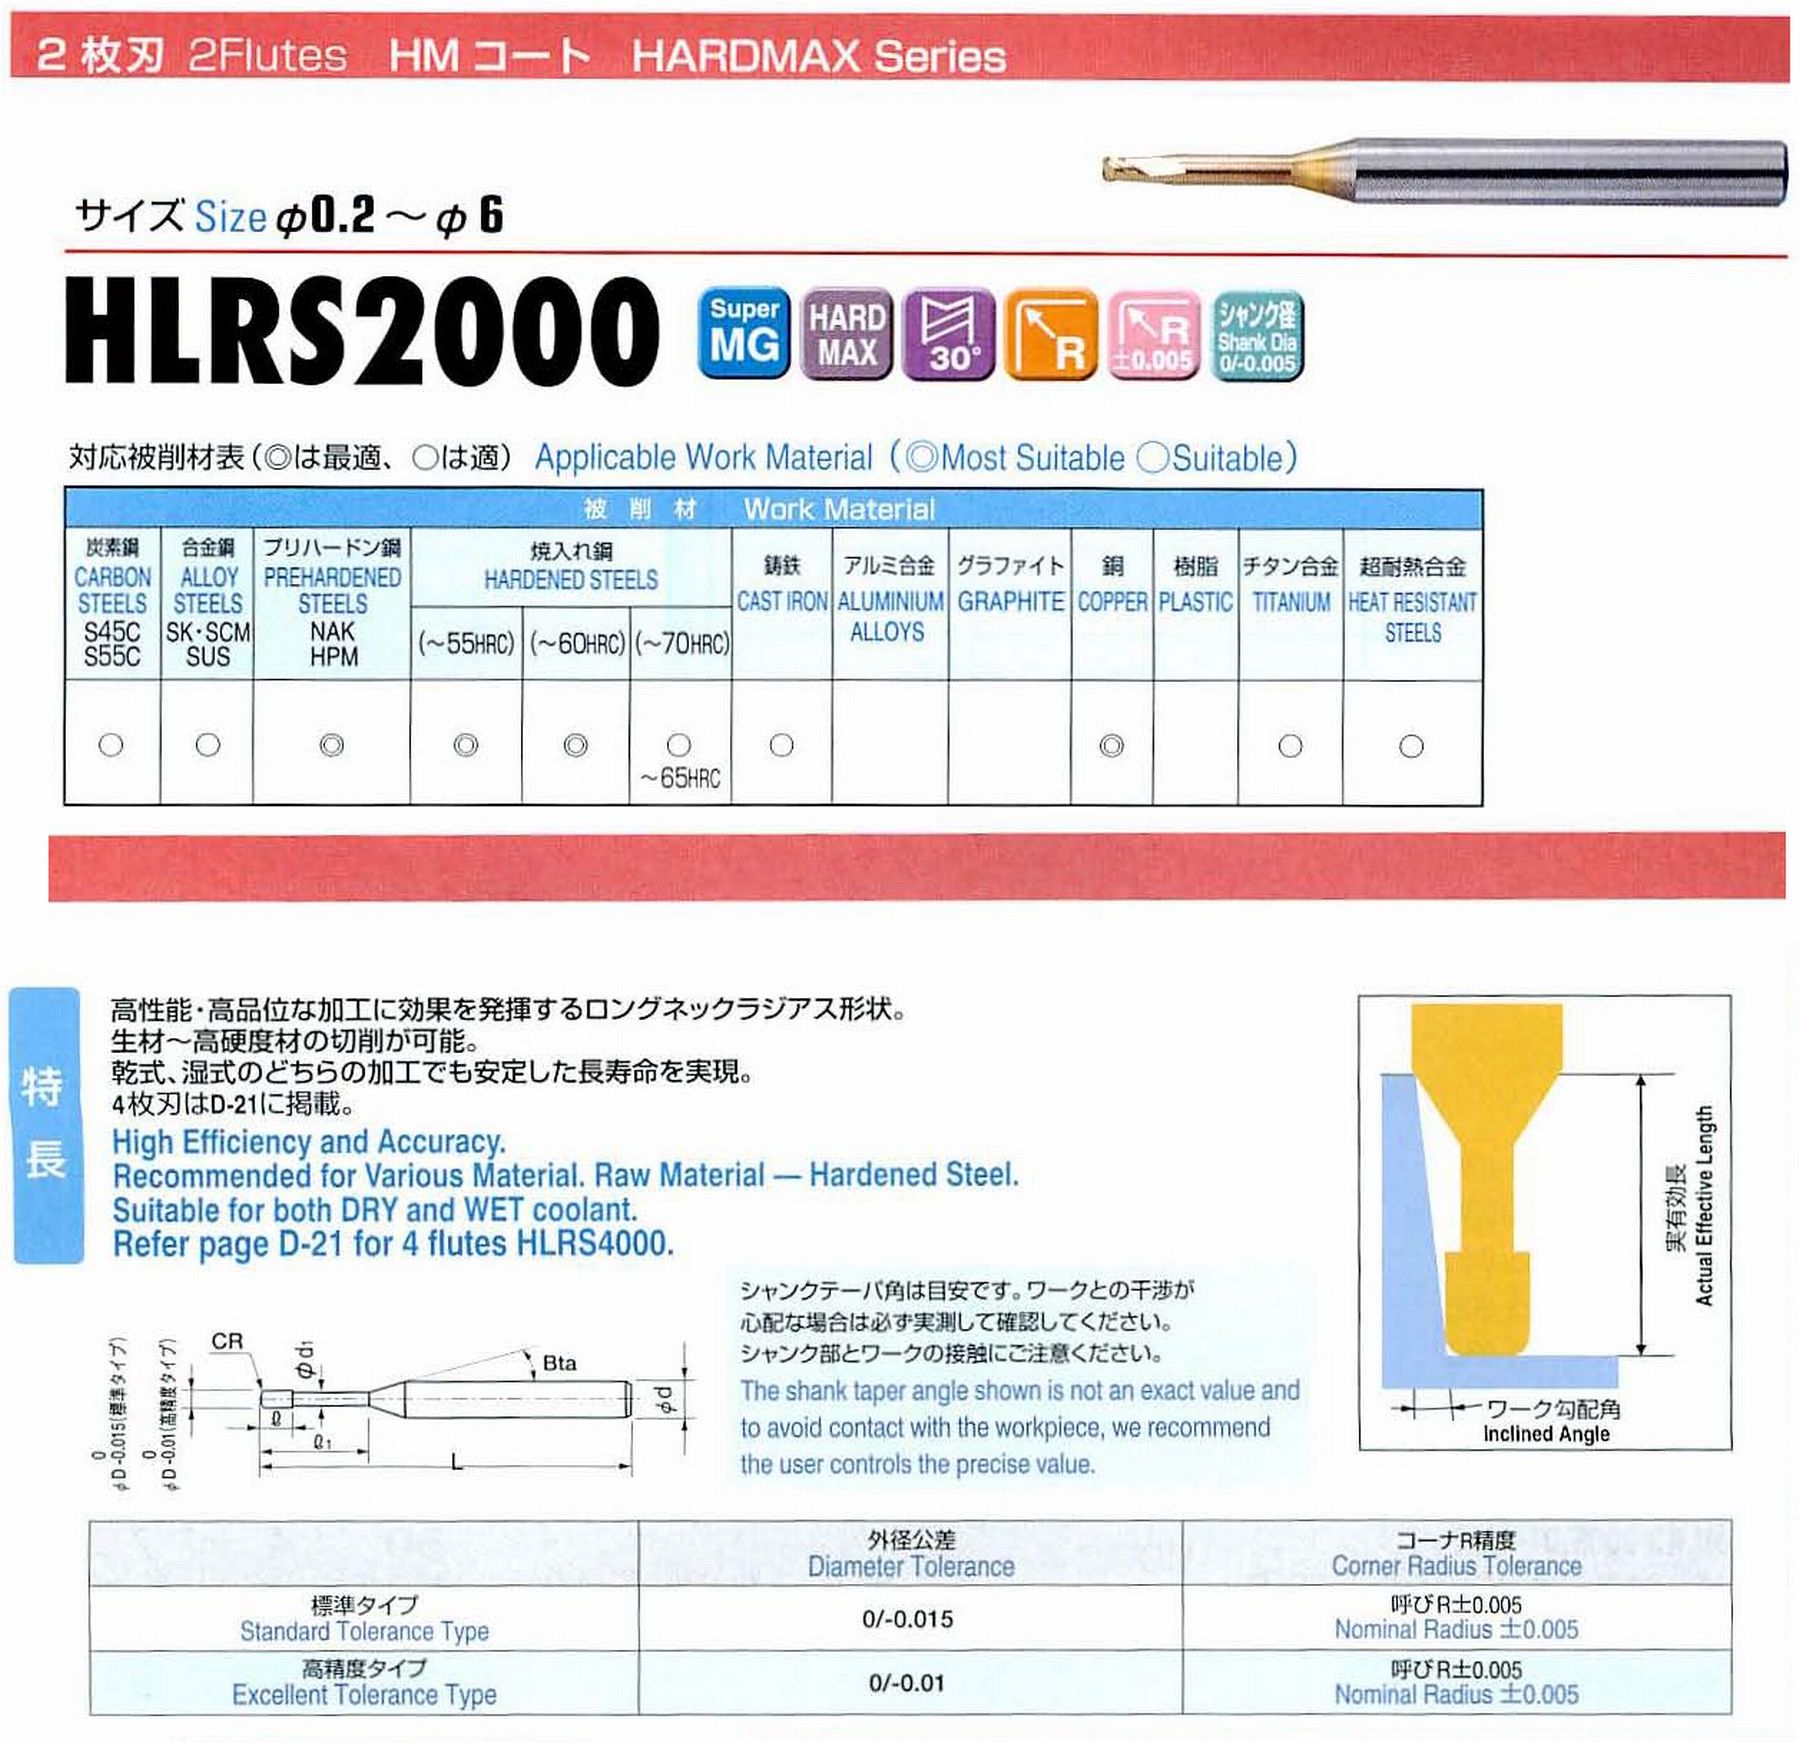 ユニオンツール 2枚刃 HLRS2010-005-030 外径1 コーナ半径R0.05 有効長3 刃長1 首径0.95 シャンクテーパ角16° 全長50 シャンク径4